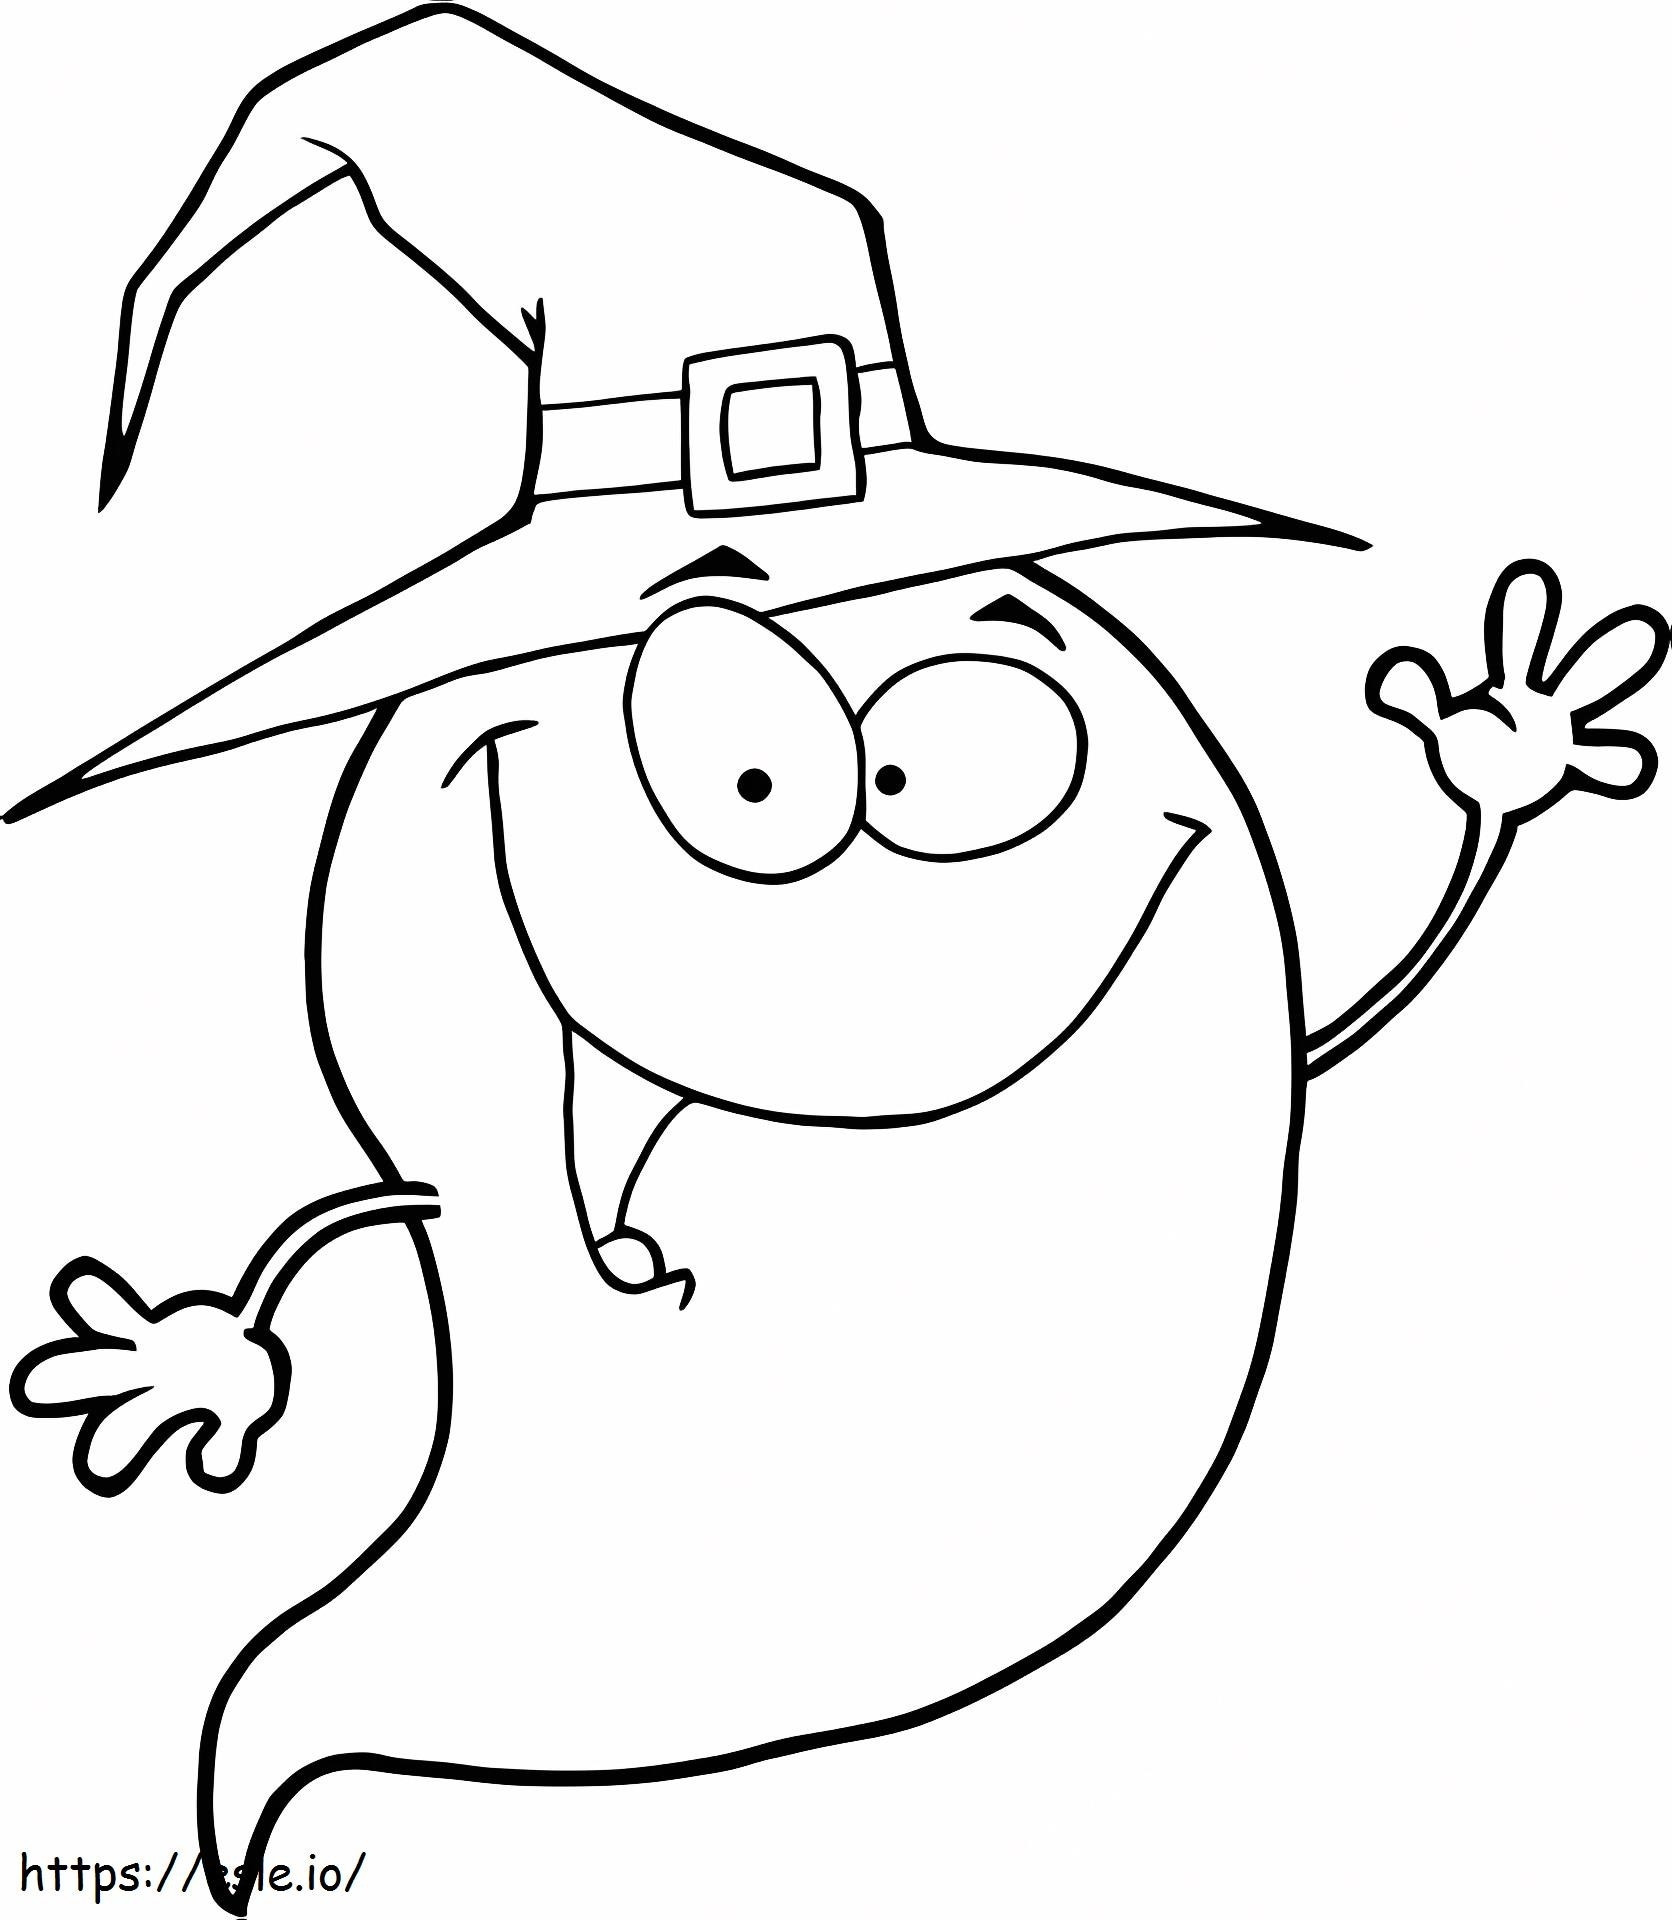 1539742639 Fantomă de Halloween care poartă o pălărie de vrăjitoare de colorat